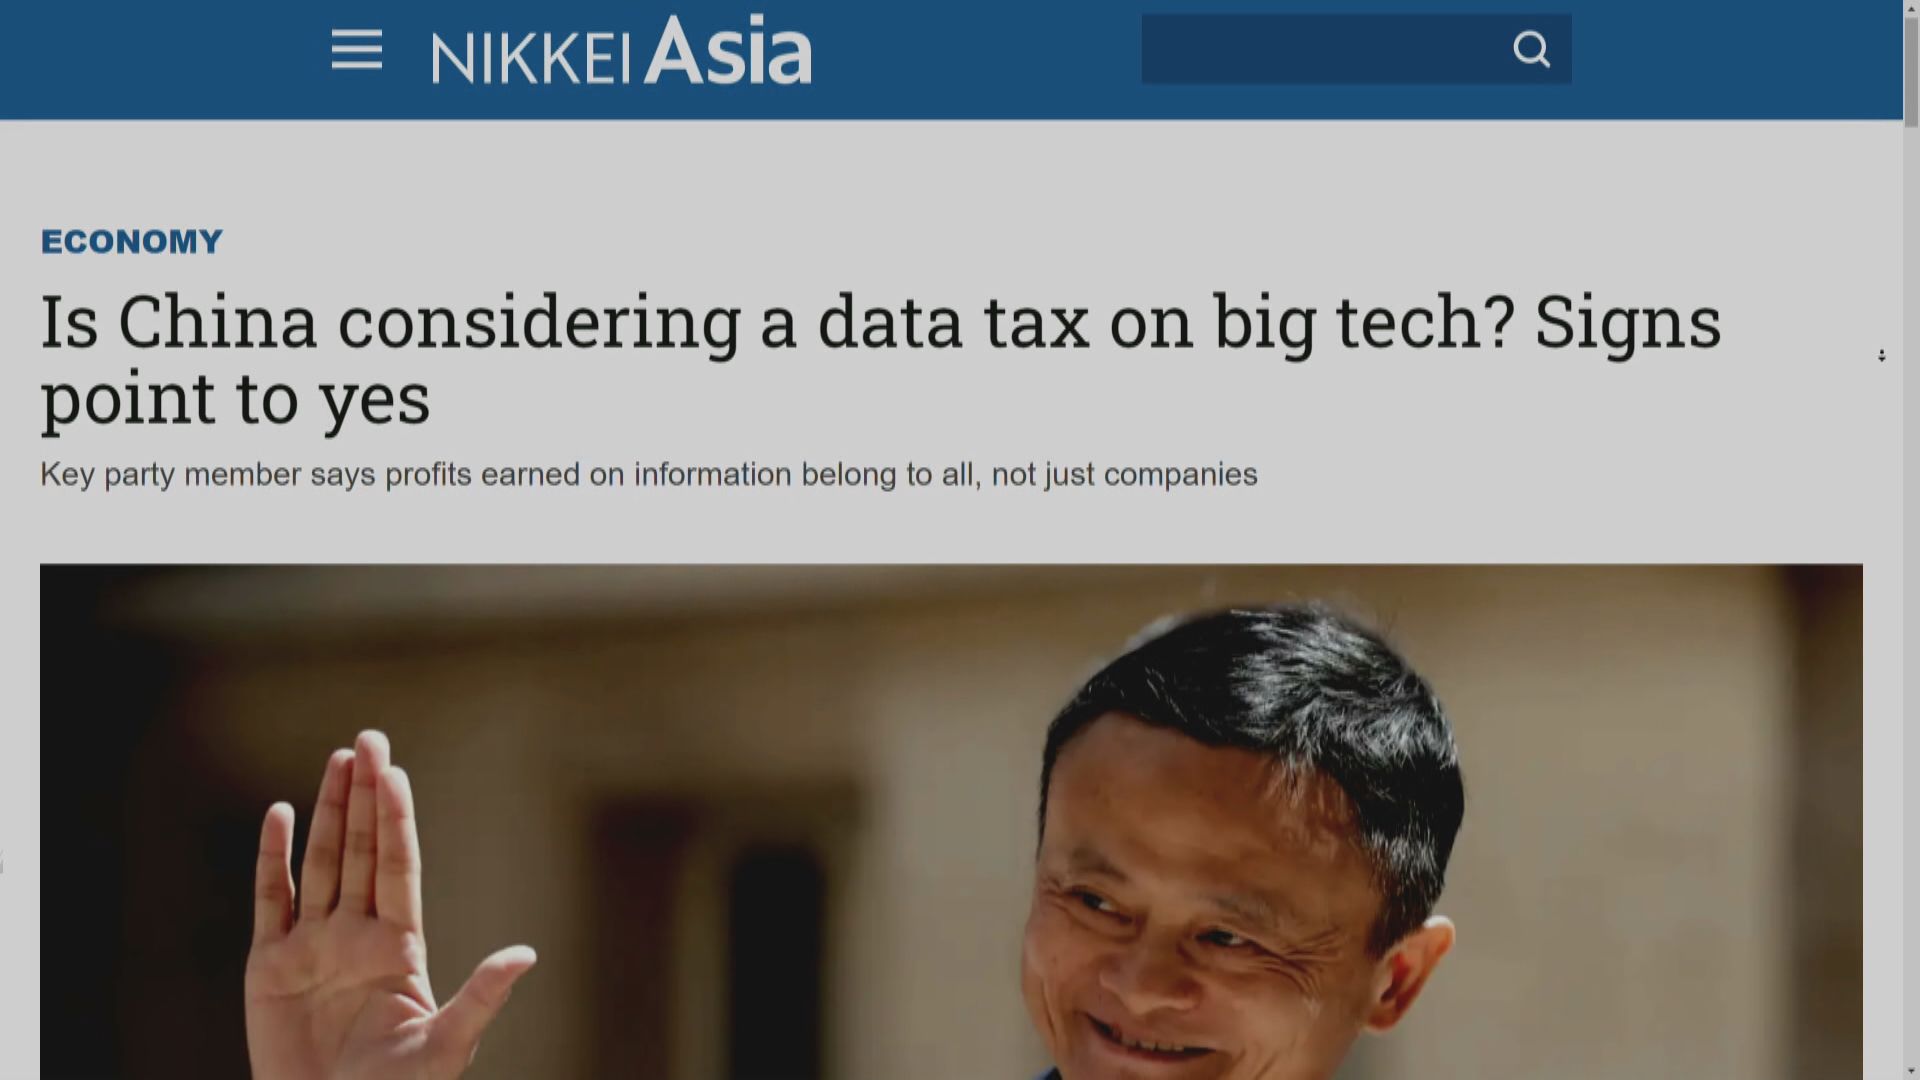 【共同富裕】日媒:內地擬對科網巨企開徵數據稅